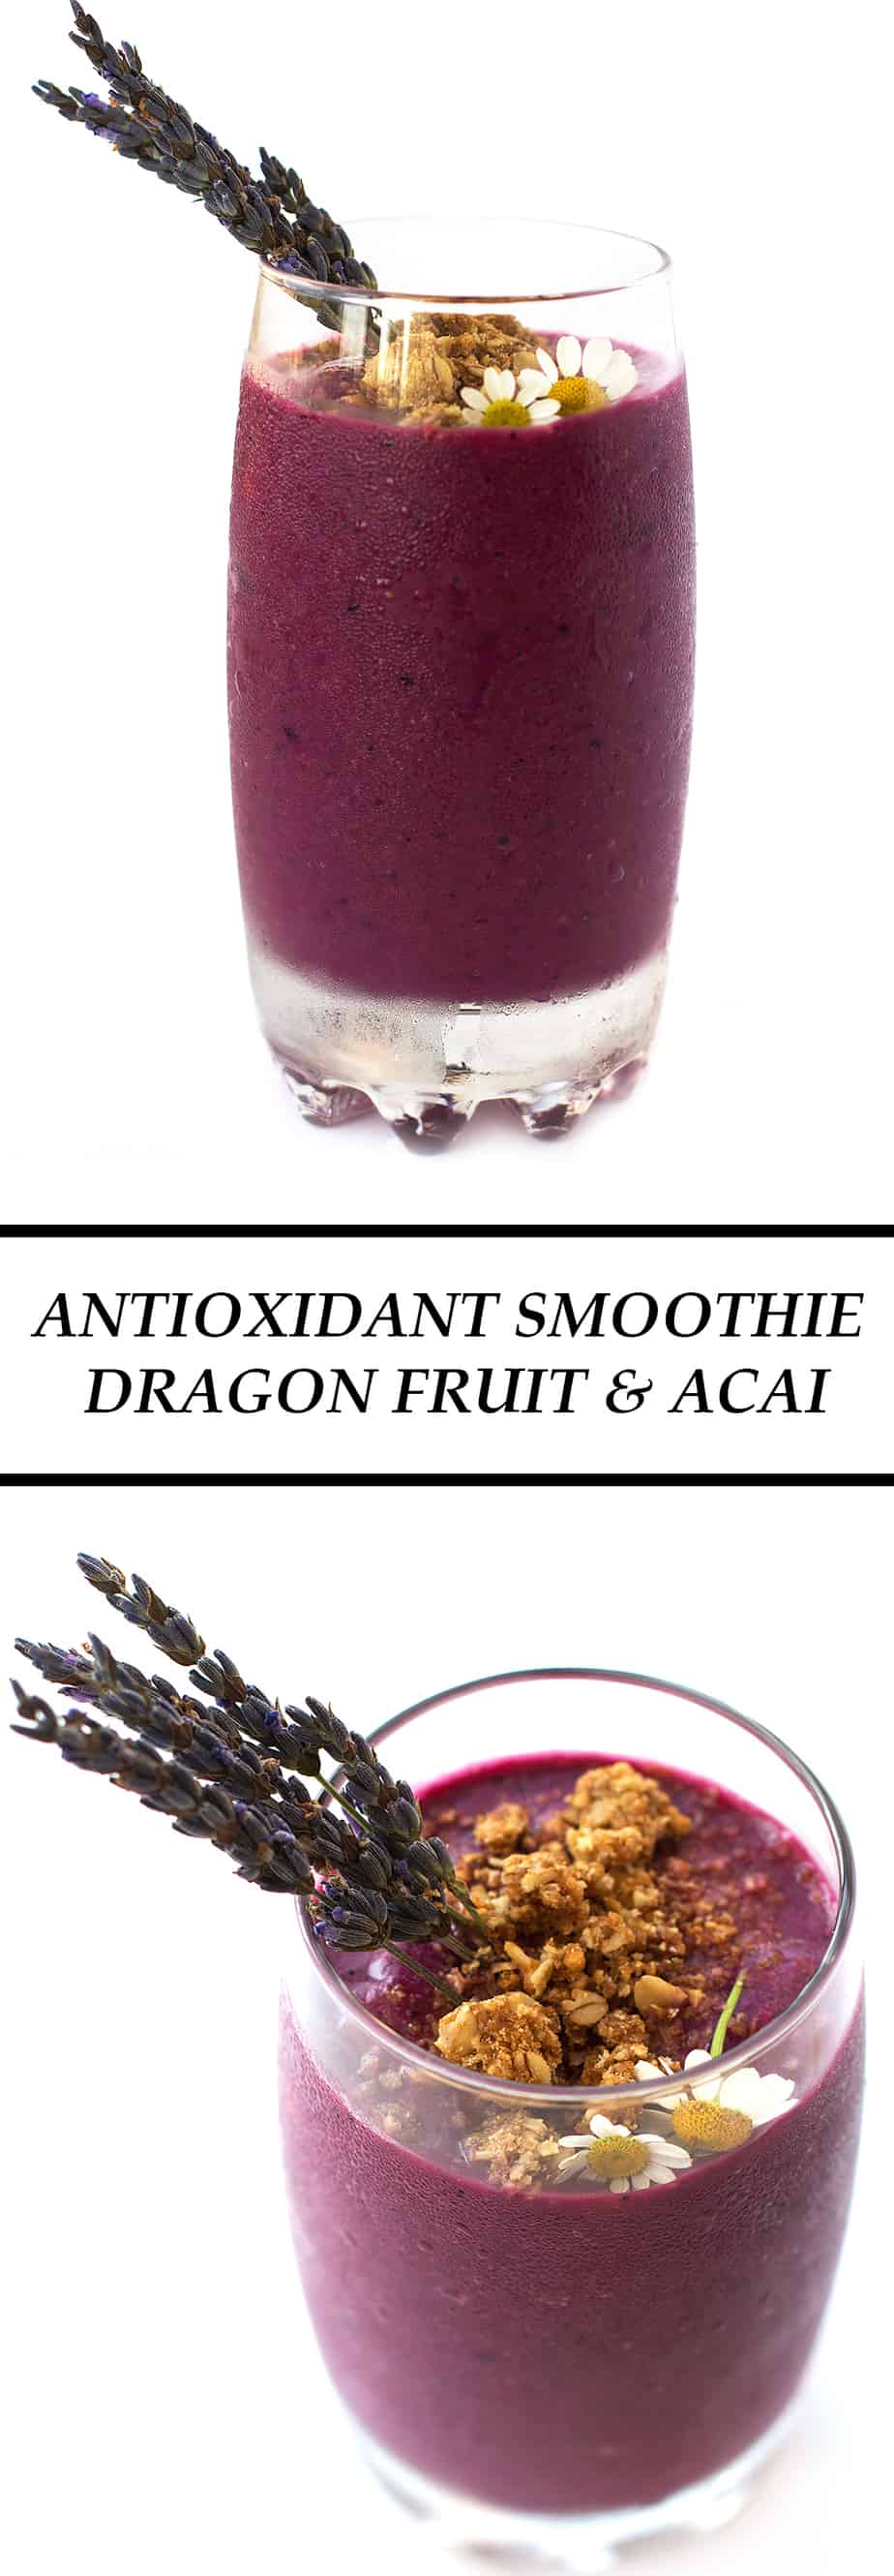 Antioxidant-smoothie-dragon-fruit-acai